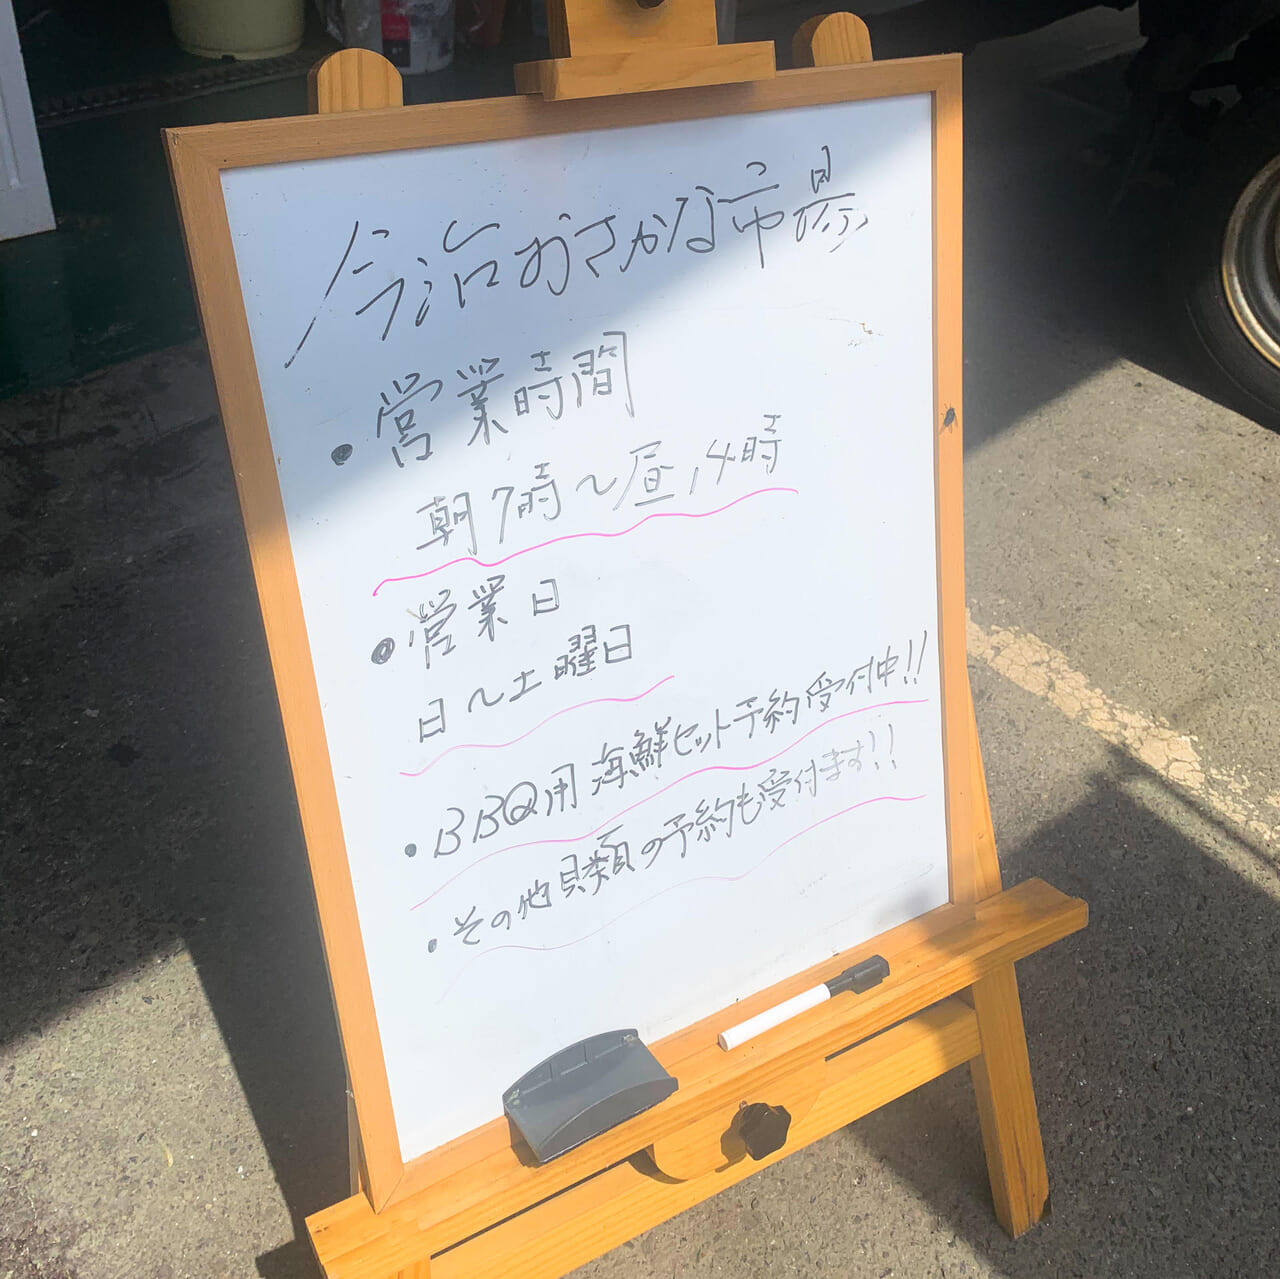 天保山町にある「今治おさかな市場」で4月18日から北海道産のカニの取り扱いが始まります!!